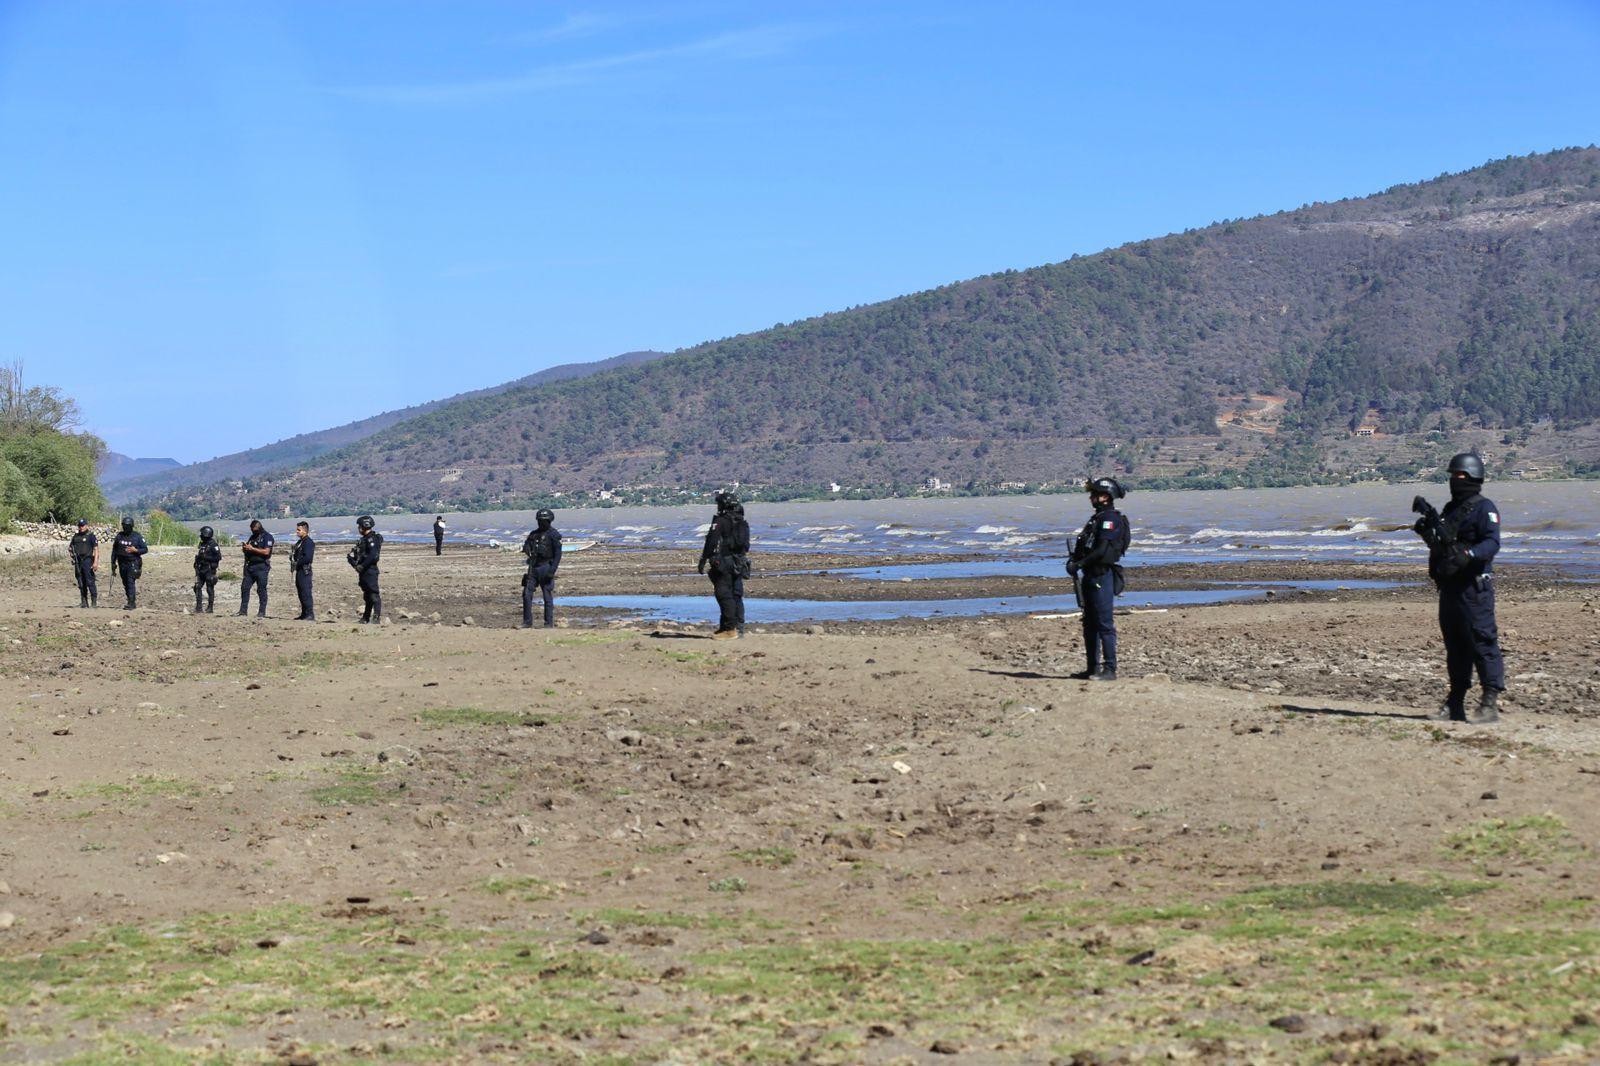 Operativos evitan “huachicol” de 600 mil litros de agua al día en lago de Pátzcuaro. El operativo de la Guardia Civil en el lago de Pátzcuaro ha evitado la sustracción